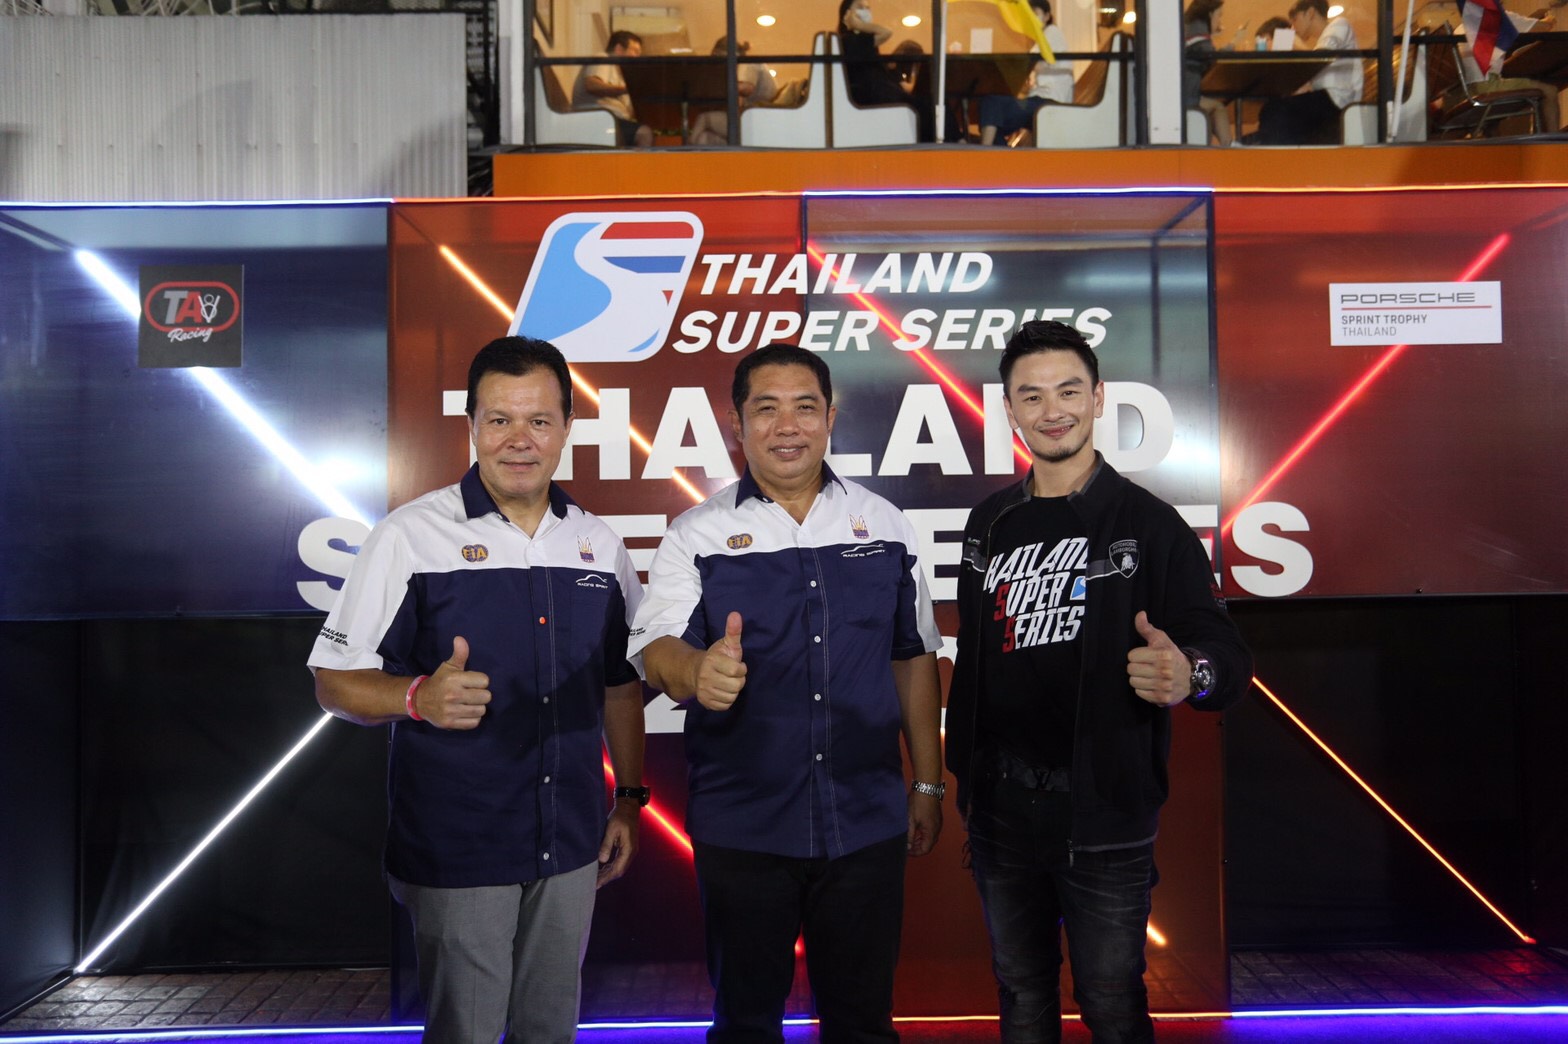 Thailand Super Series เปิดตัวศึก 2020 ยิ่งใหญ่ ครั้งแรก ของมอเตอร์สปอร์ตไทย ก้าวสู่ Support Race การแข่งขัน Formula 1 พร้อมเตรียมตัวในฐานะ เจ้าบ้าน ต้อนรับรายการแข่งระดับนานาชาติตลอดฤดูกาล